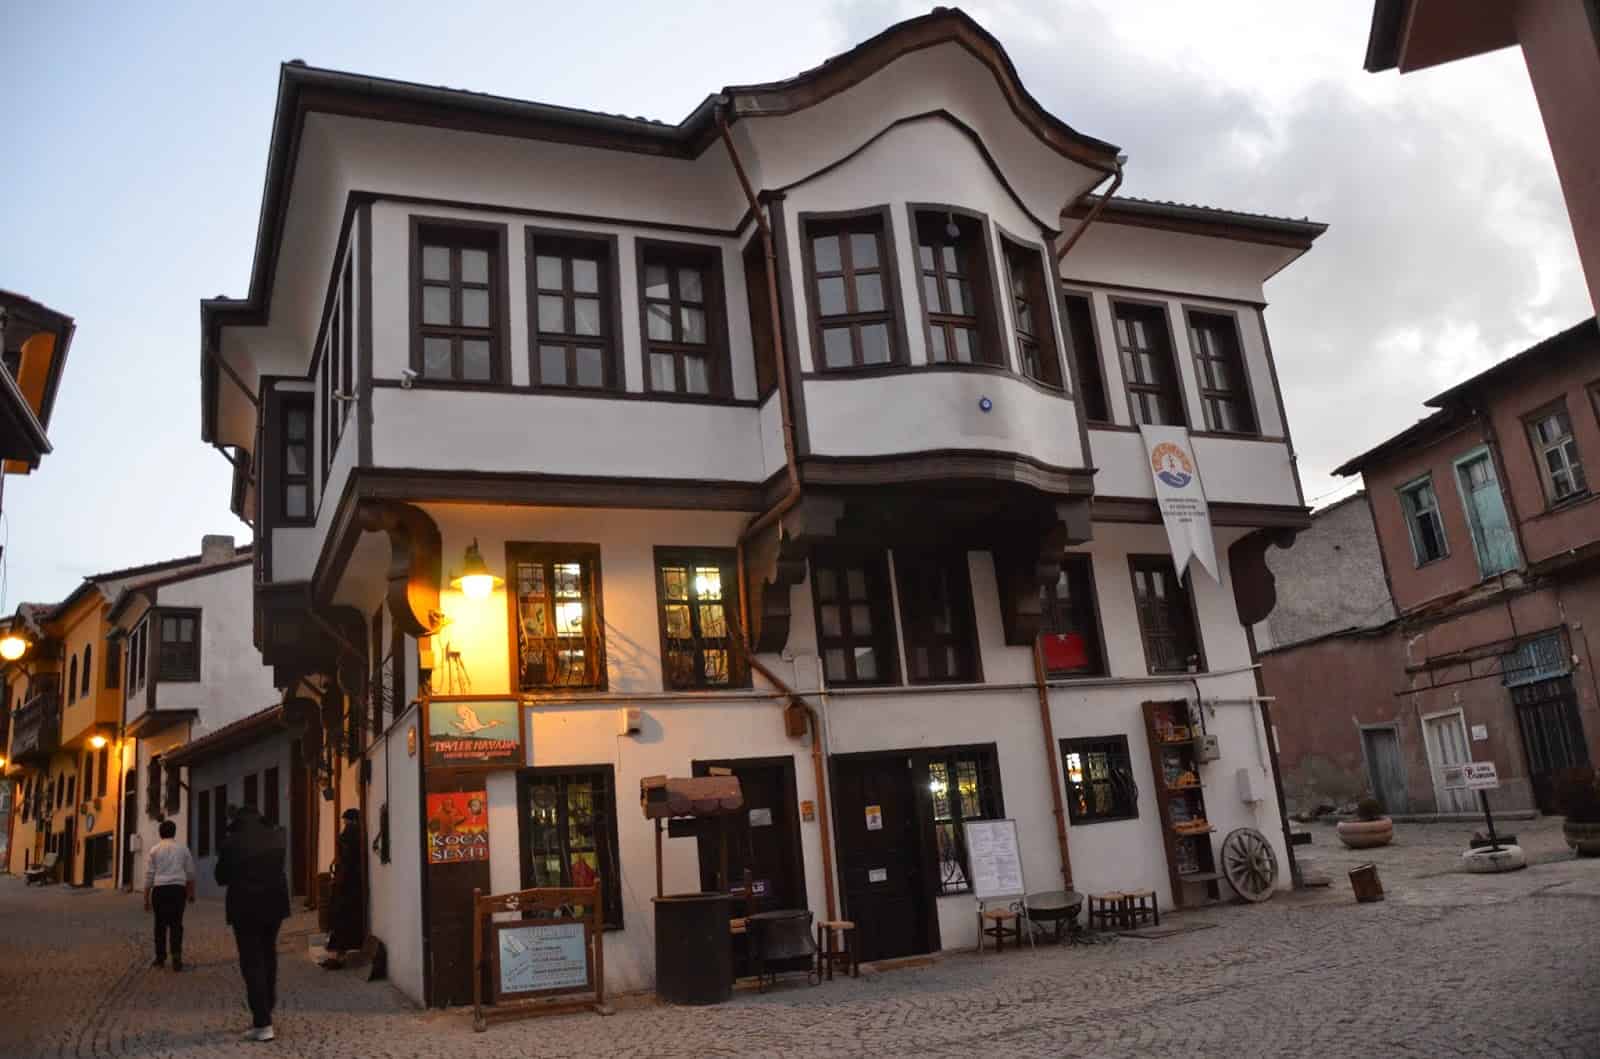 Ottoman home in Odunpazarı in Eskişehir, Turkey